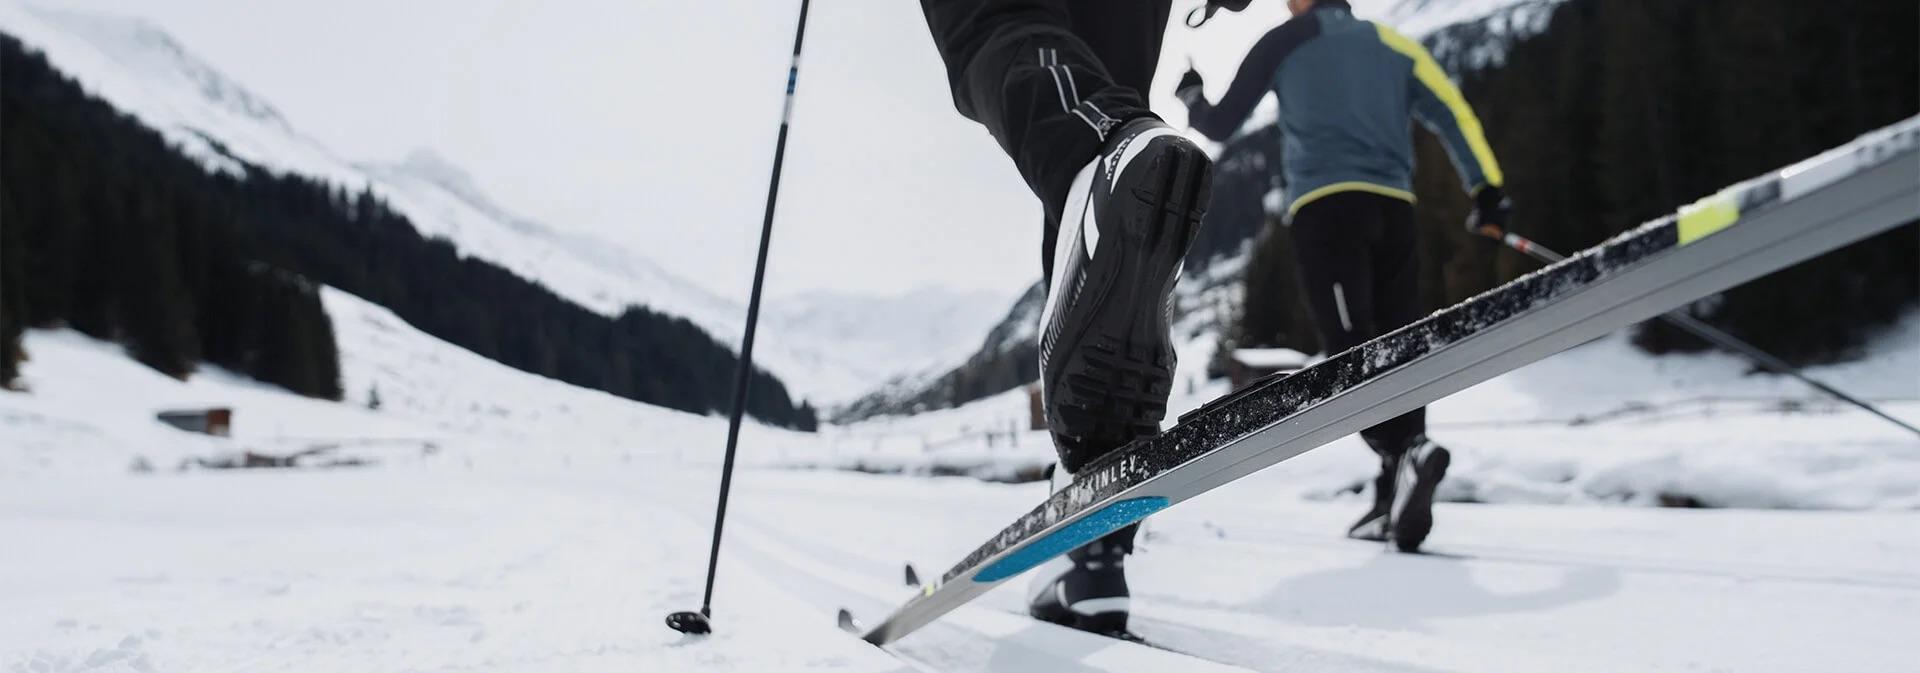 Personer som åker på vallningsfria skidor